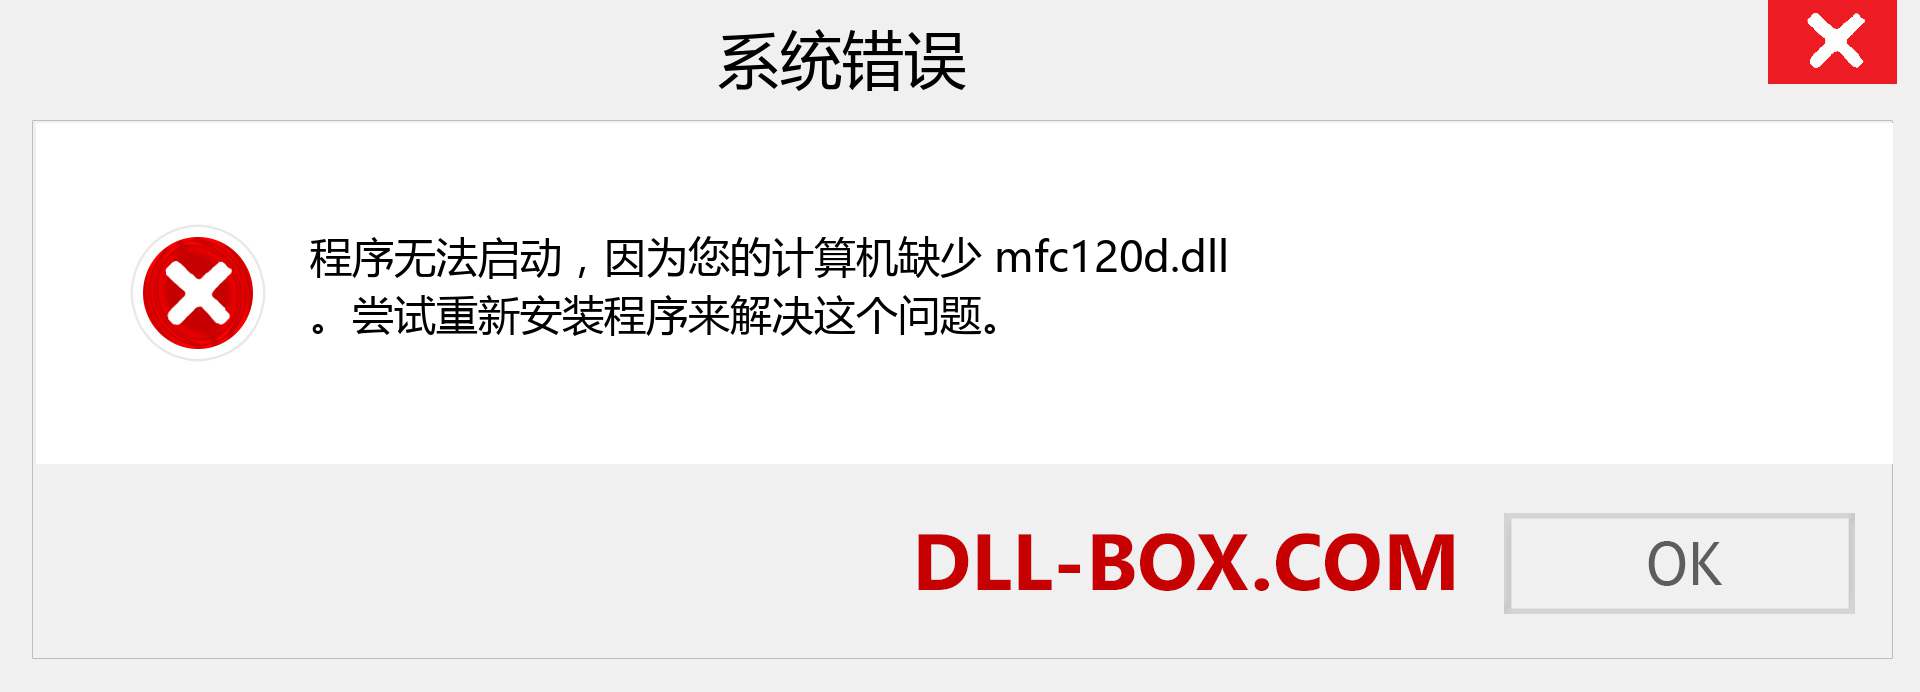 mfc120d.dll 文件丢失？。 适用于 Windows 7、8、10 的下载 - 修复 Windows、照片、图像上的 mfc120d dll 丢失错误